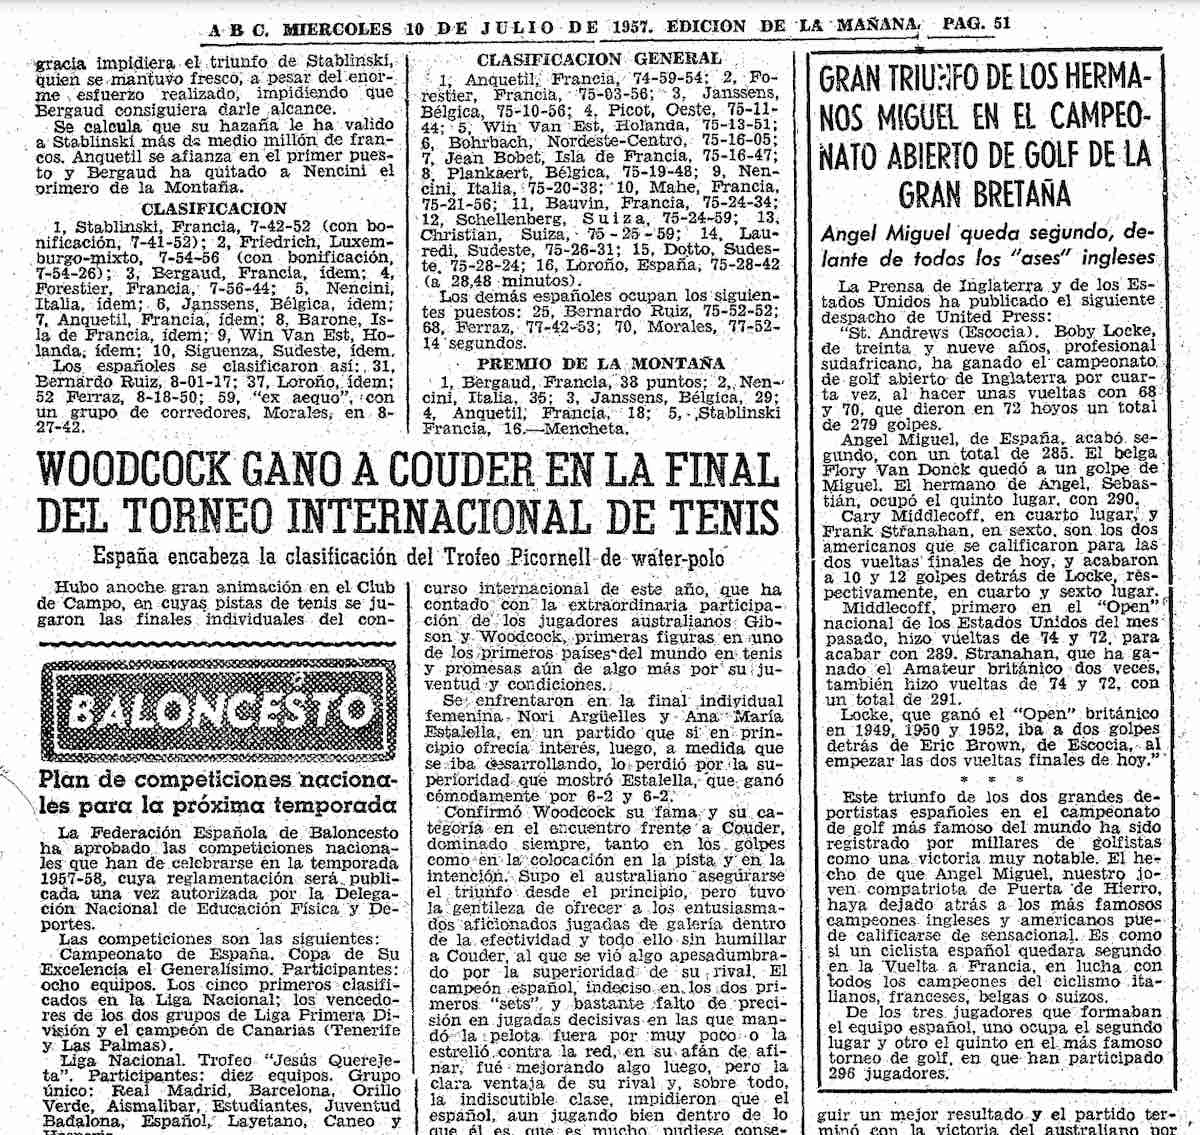 Información del Diario ABC del día 10 de julio de 1957 sobre el Open.